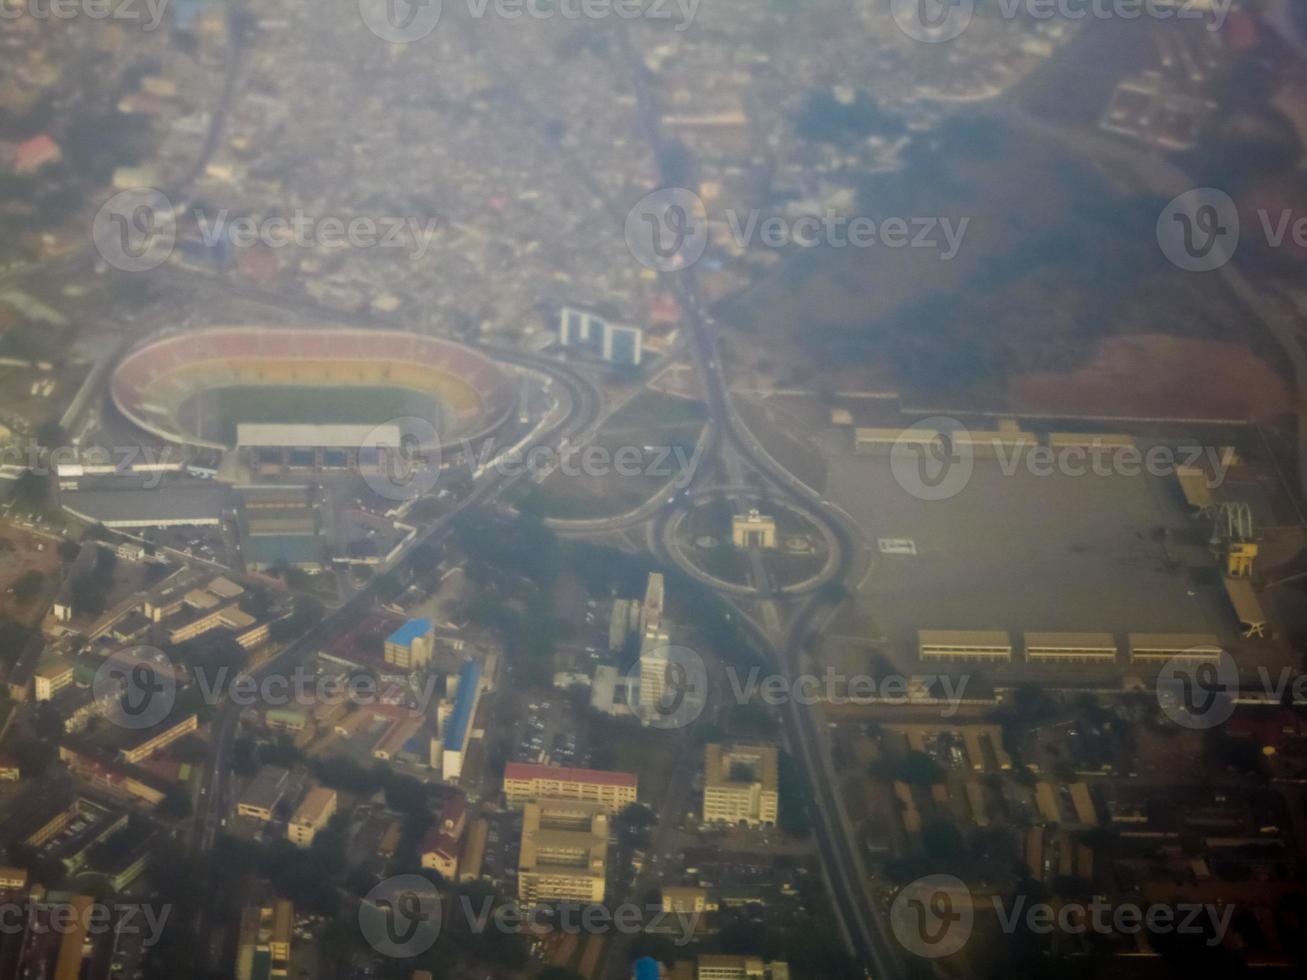 aereo Visualizza di indipendenza piazza - accra, Ghana foto